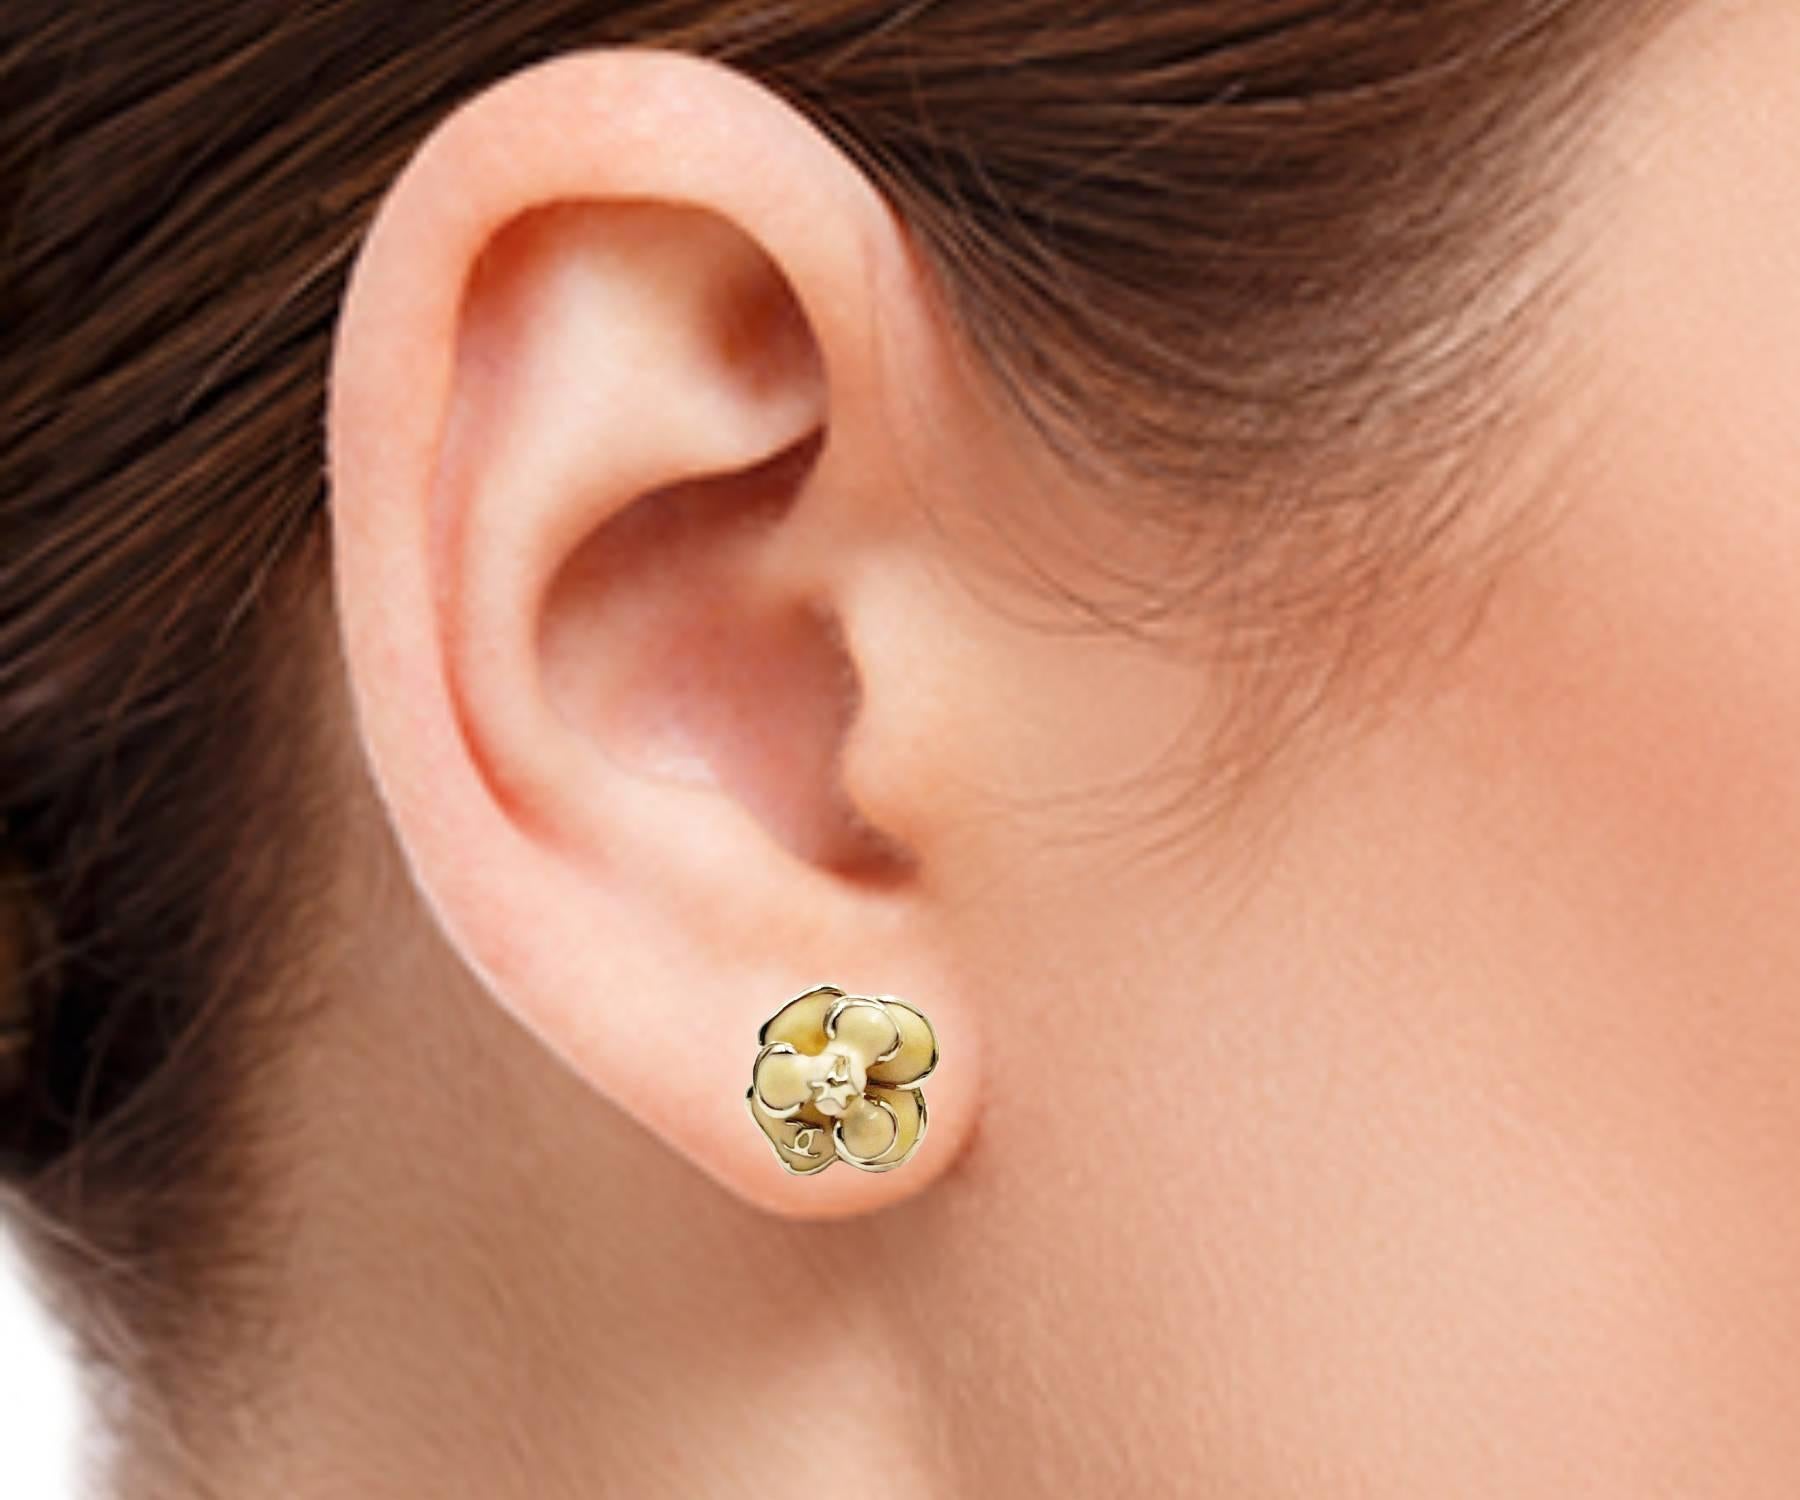 14k gold chanel earrings